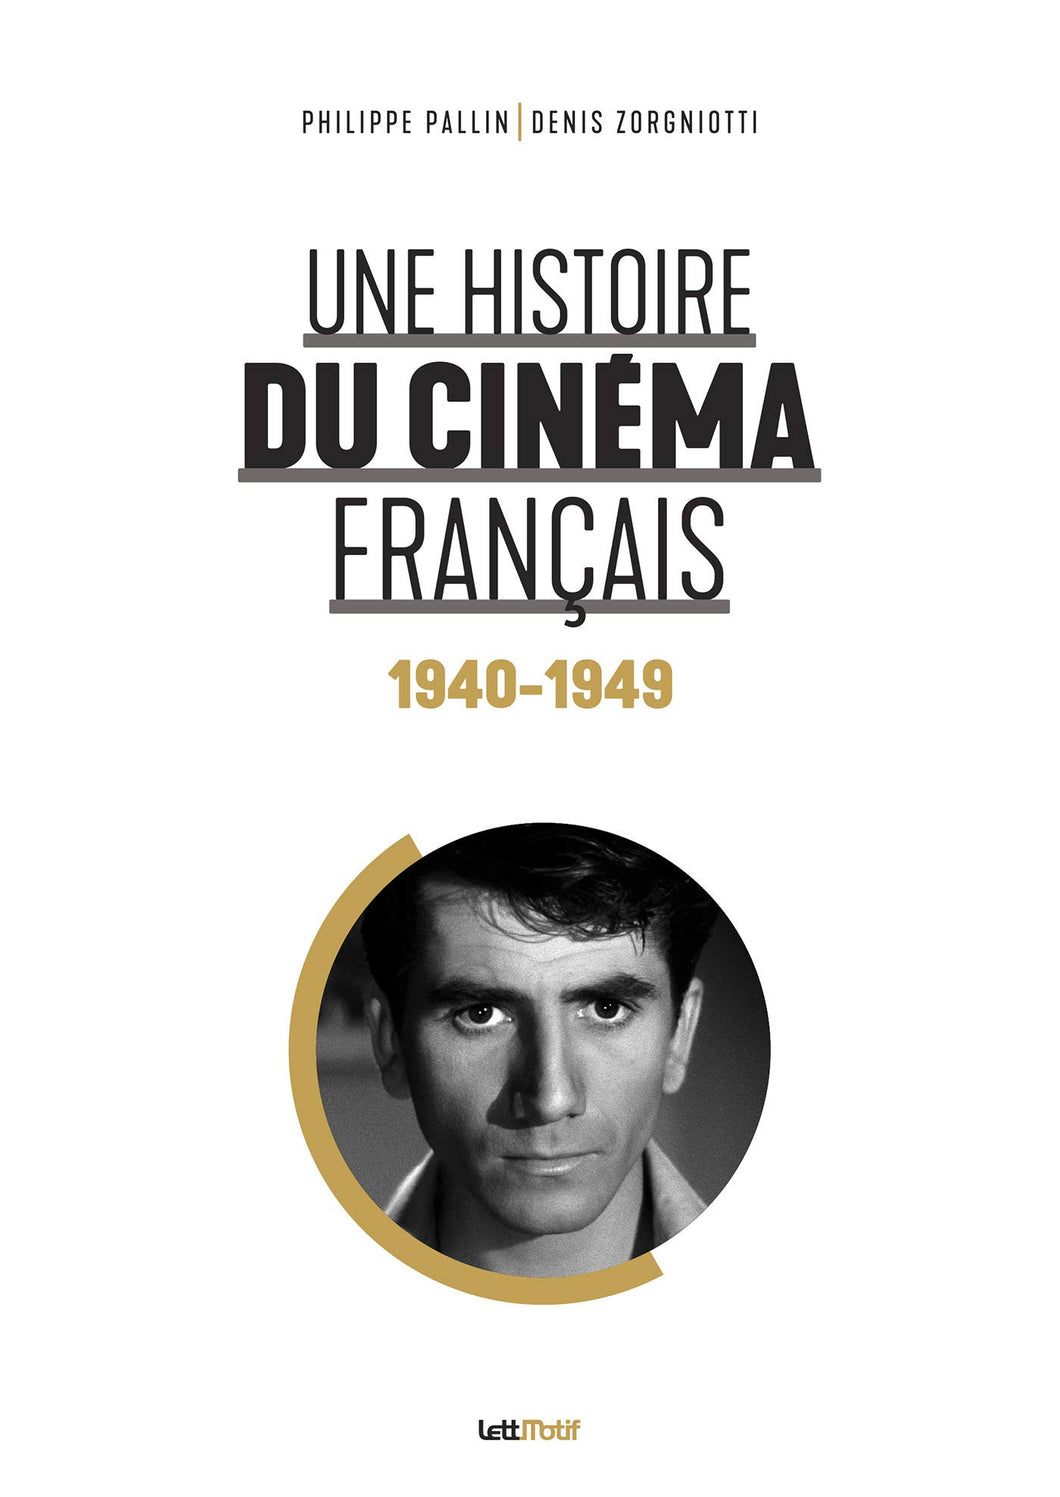 Une histoire du cinéma français (1940-1949) de Philippe Pallin & Denis Zorgniotti Préface de Thierry Frémaux - front cover